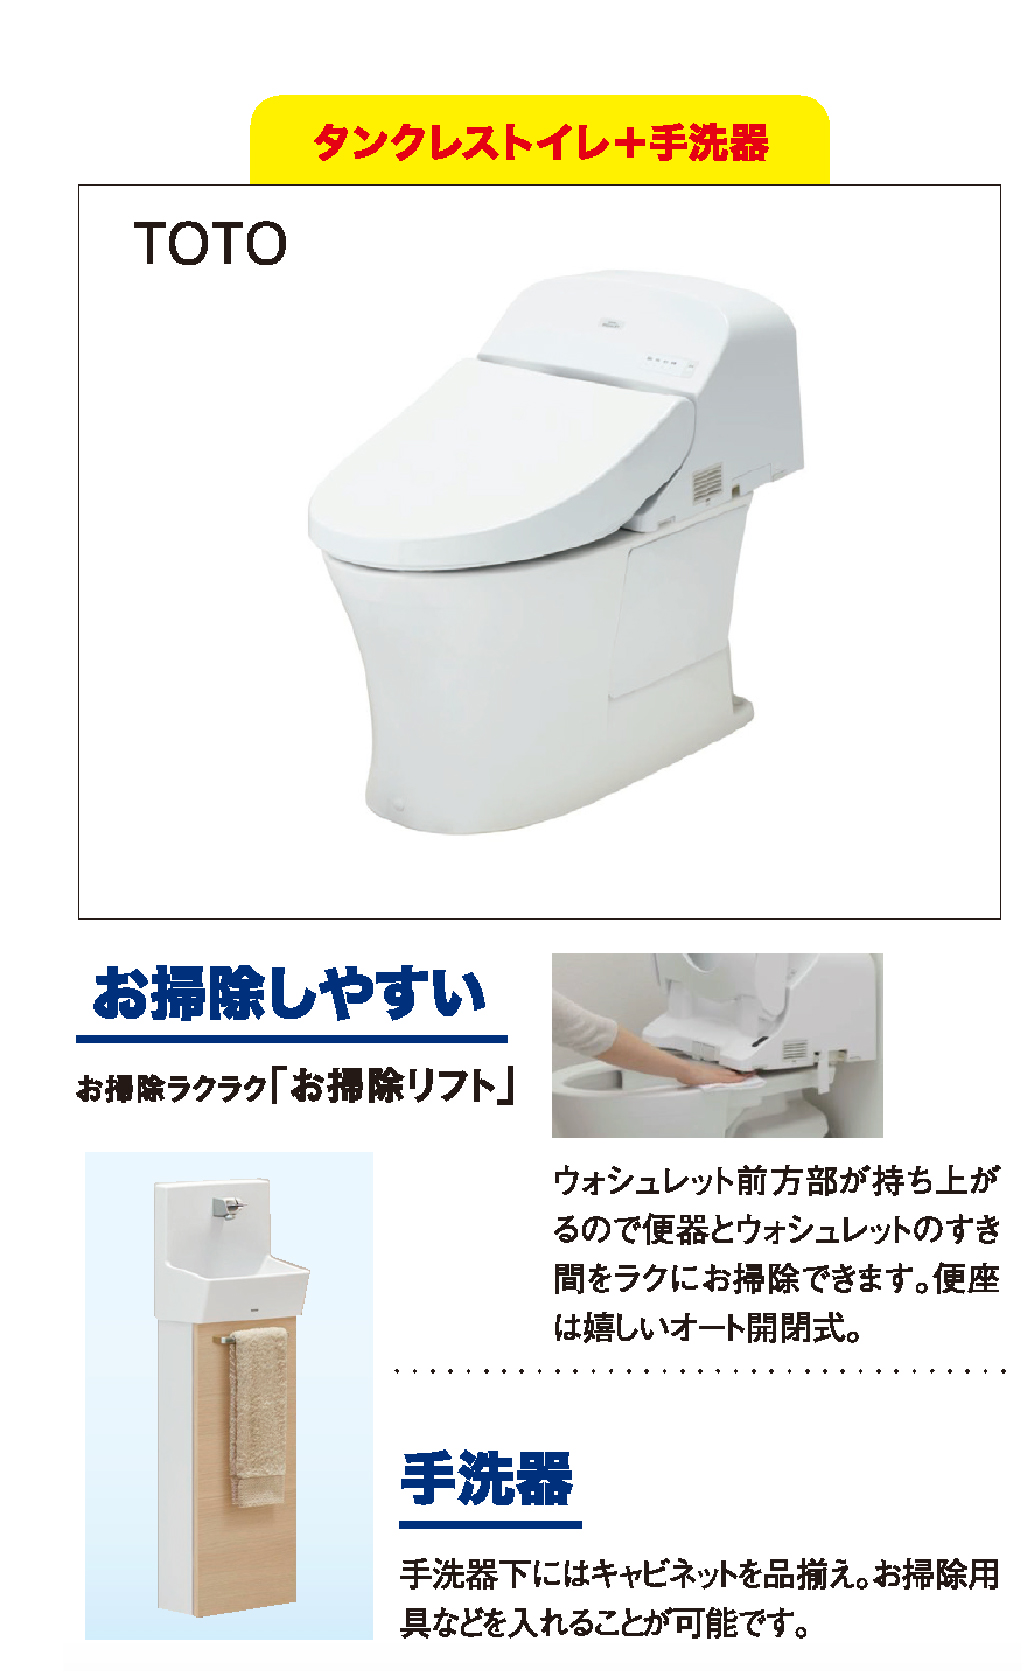 タンクレストイレ+手洗い機